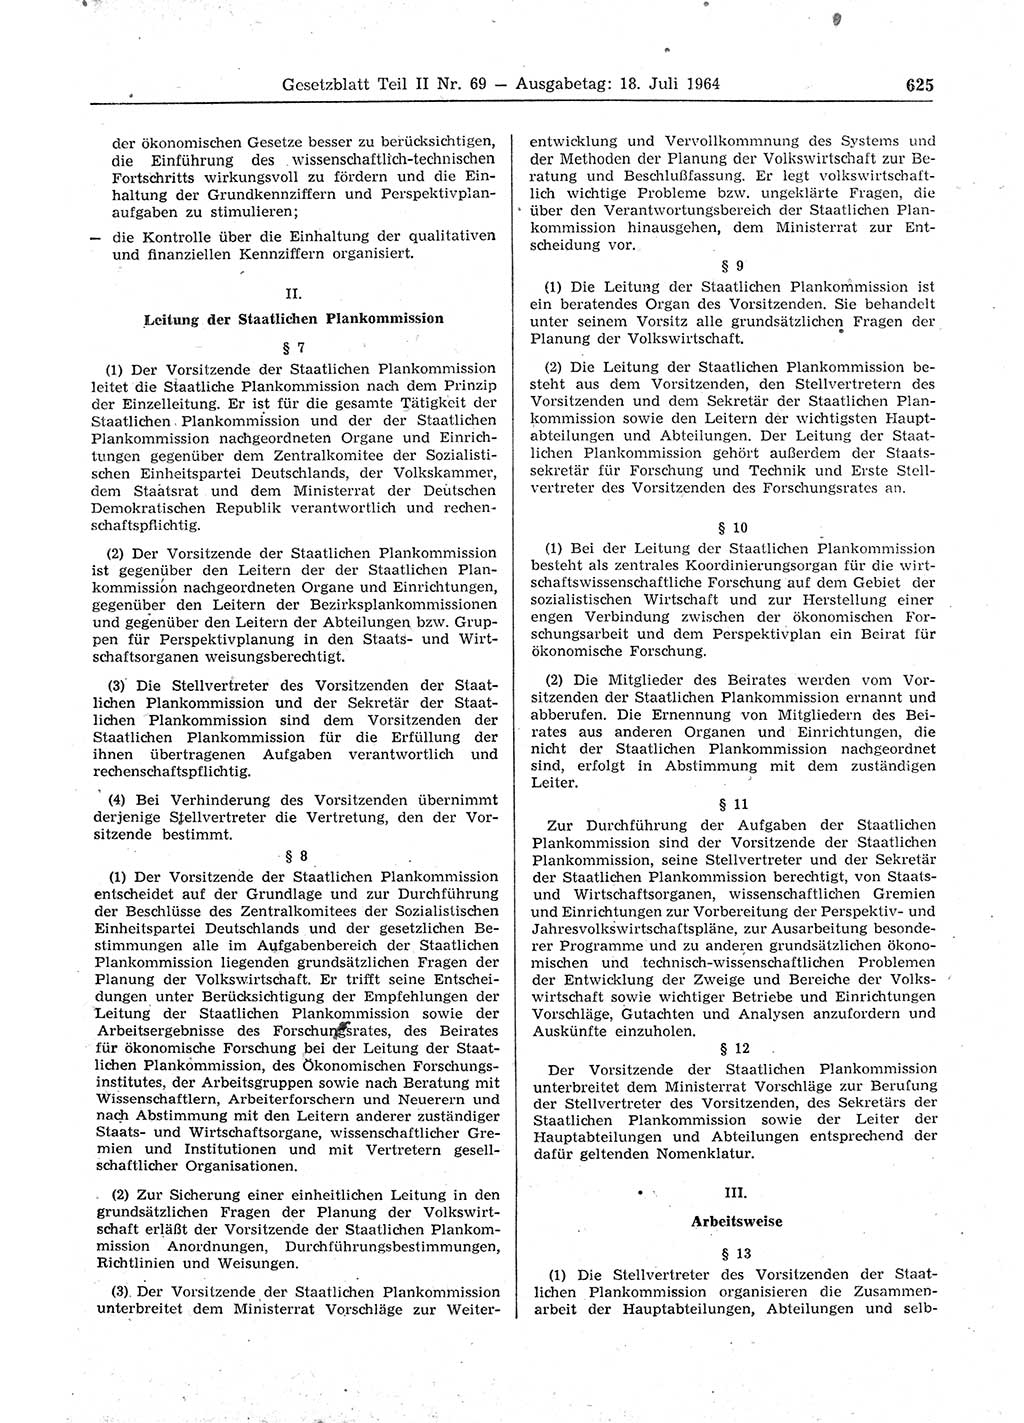 Gesetzblatt (GBl.) der Deutschen Demokratischen Republik (DDR) Teil ⅠⅠ 1964, Seite 625 (GBl. DDR ⅠⅠ 1964, S. 625)